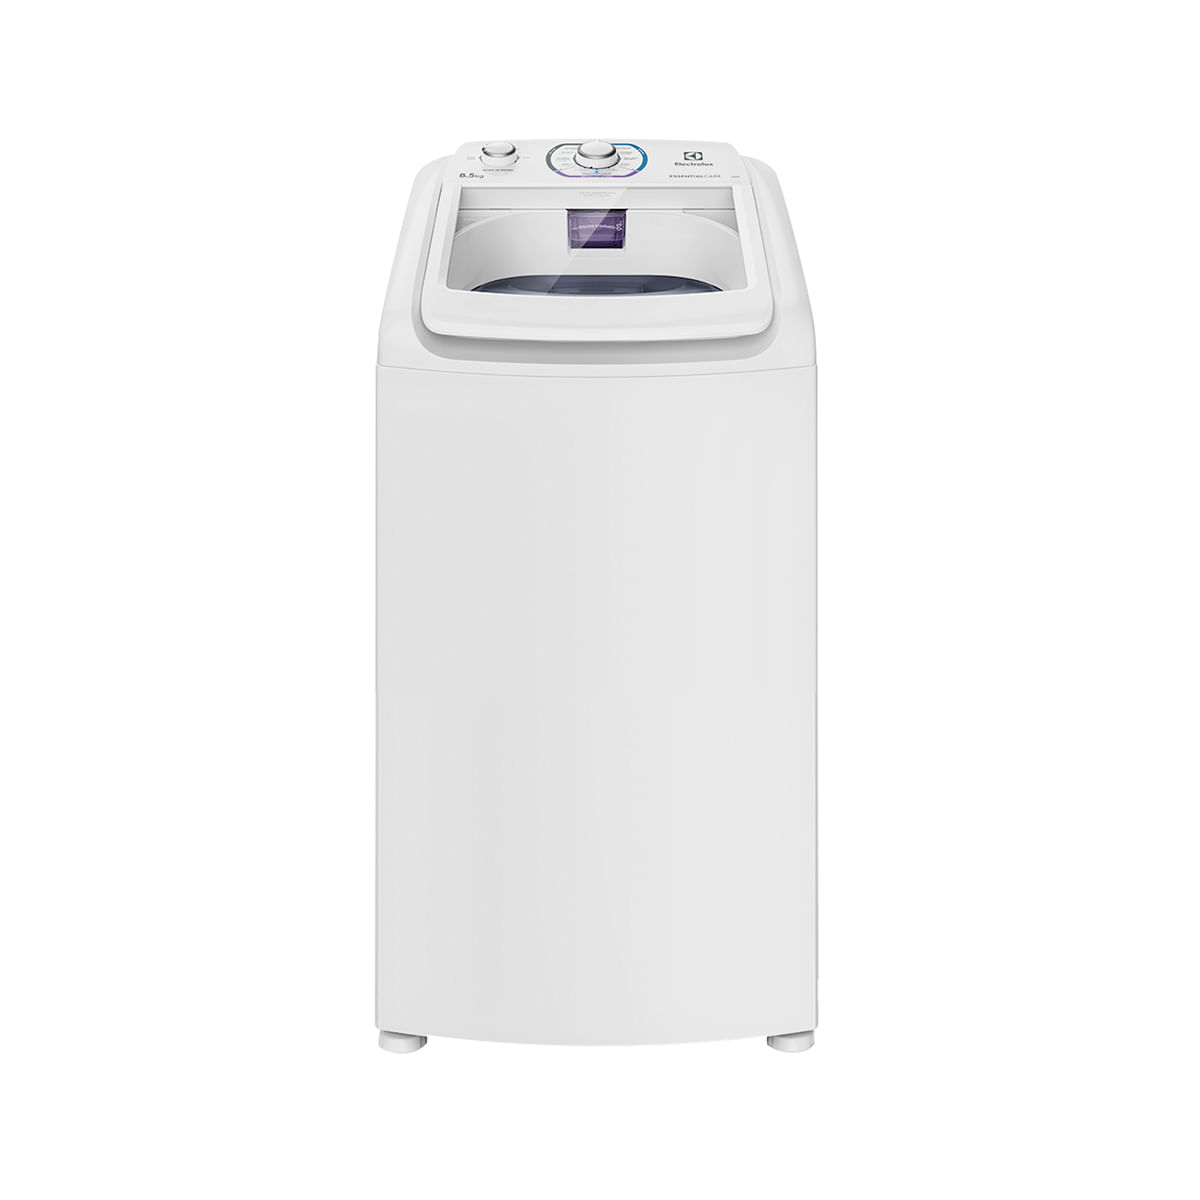 Máquina de Lavar Roupas Electrolux 8,5 kg Branca LES09 110 volts